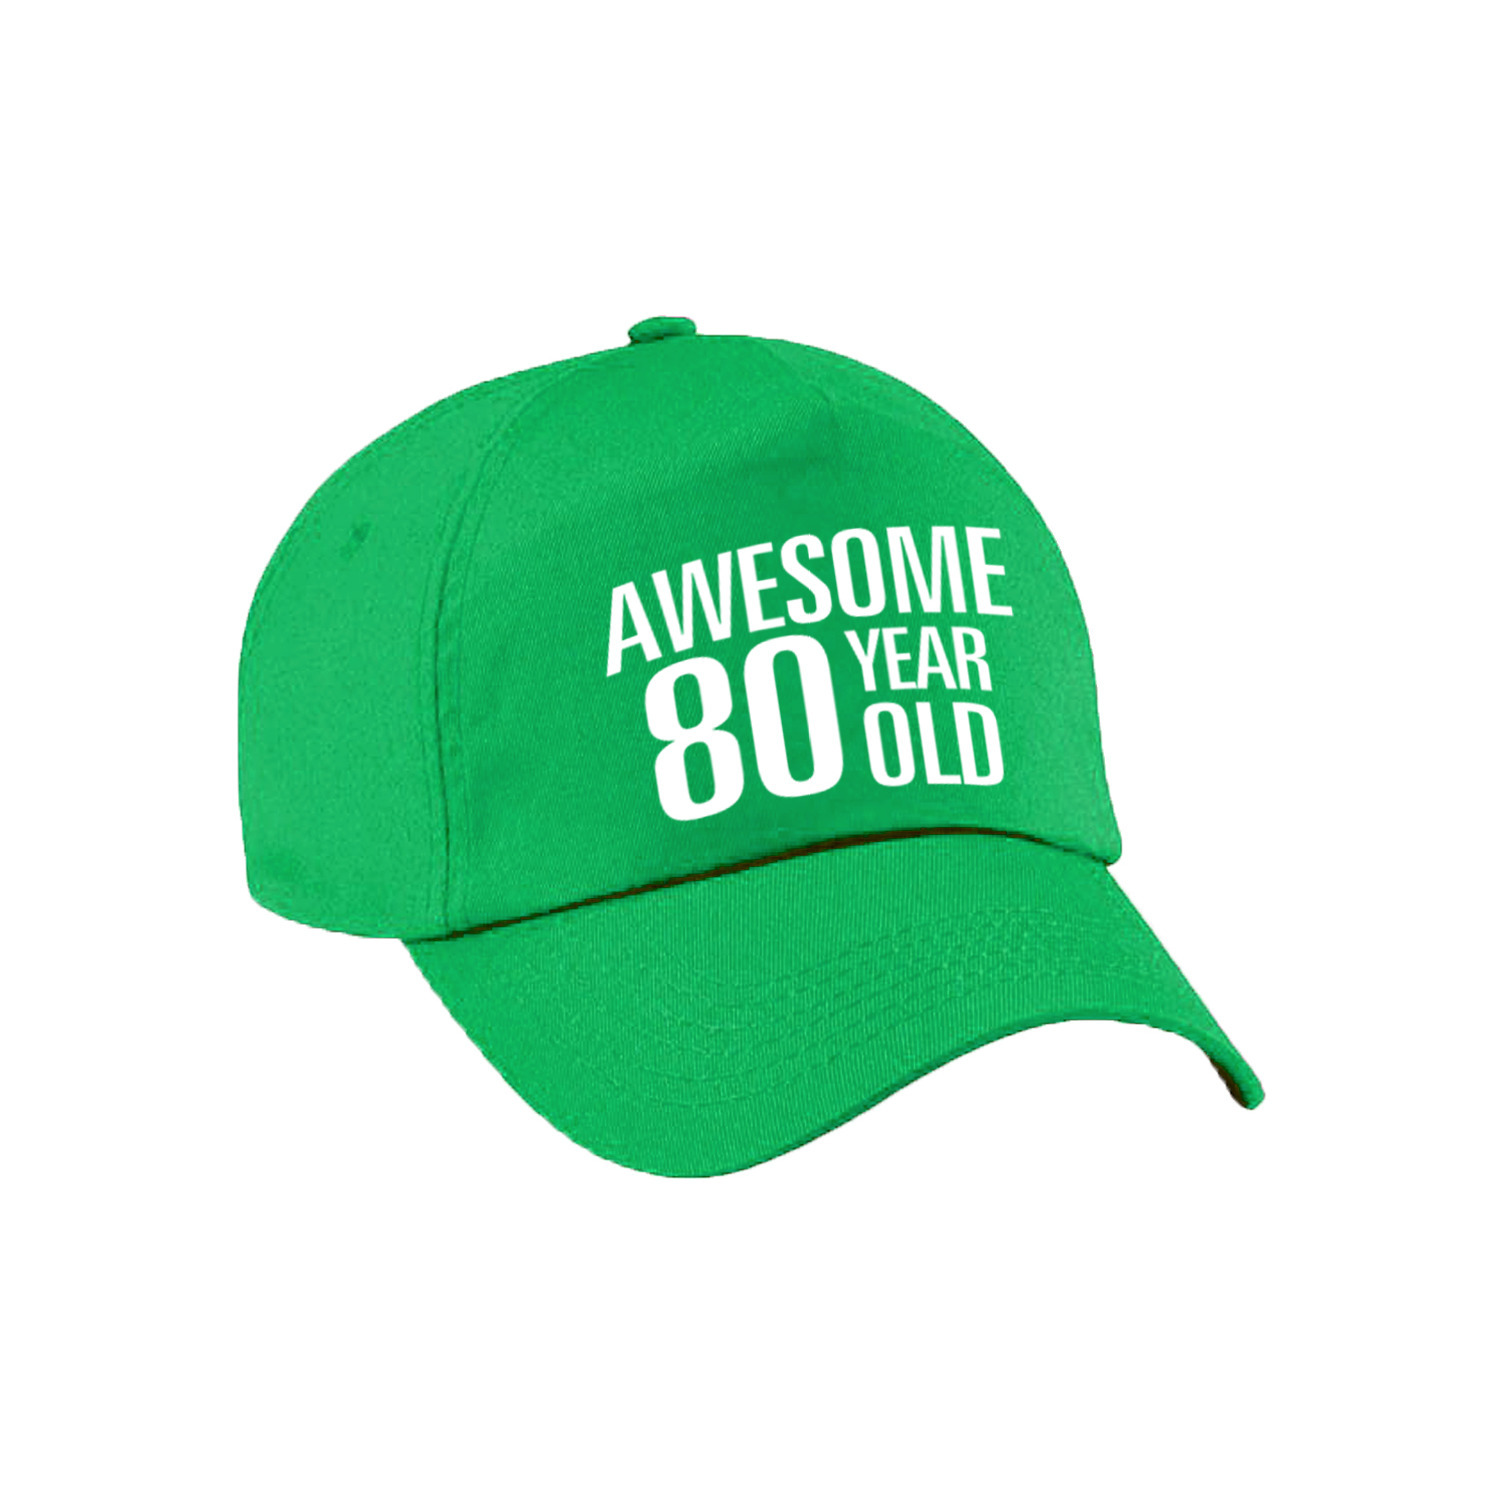 Awesome 80 year old verjaardag pet-cap groen voor dames en heren